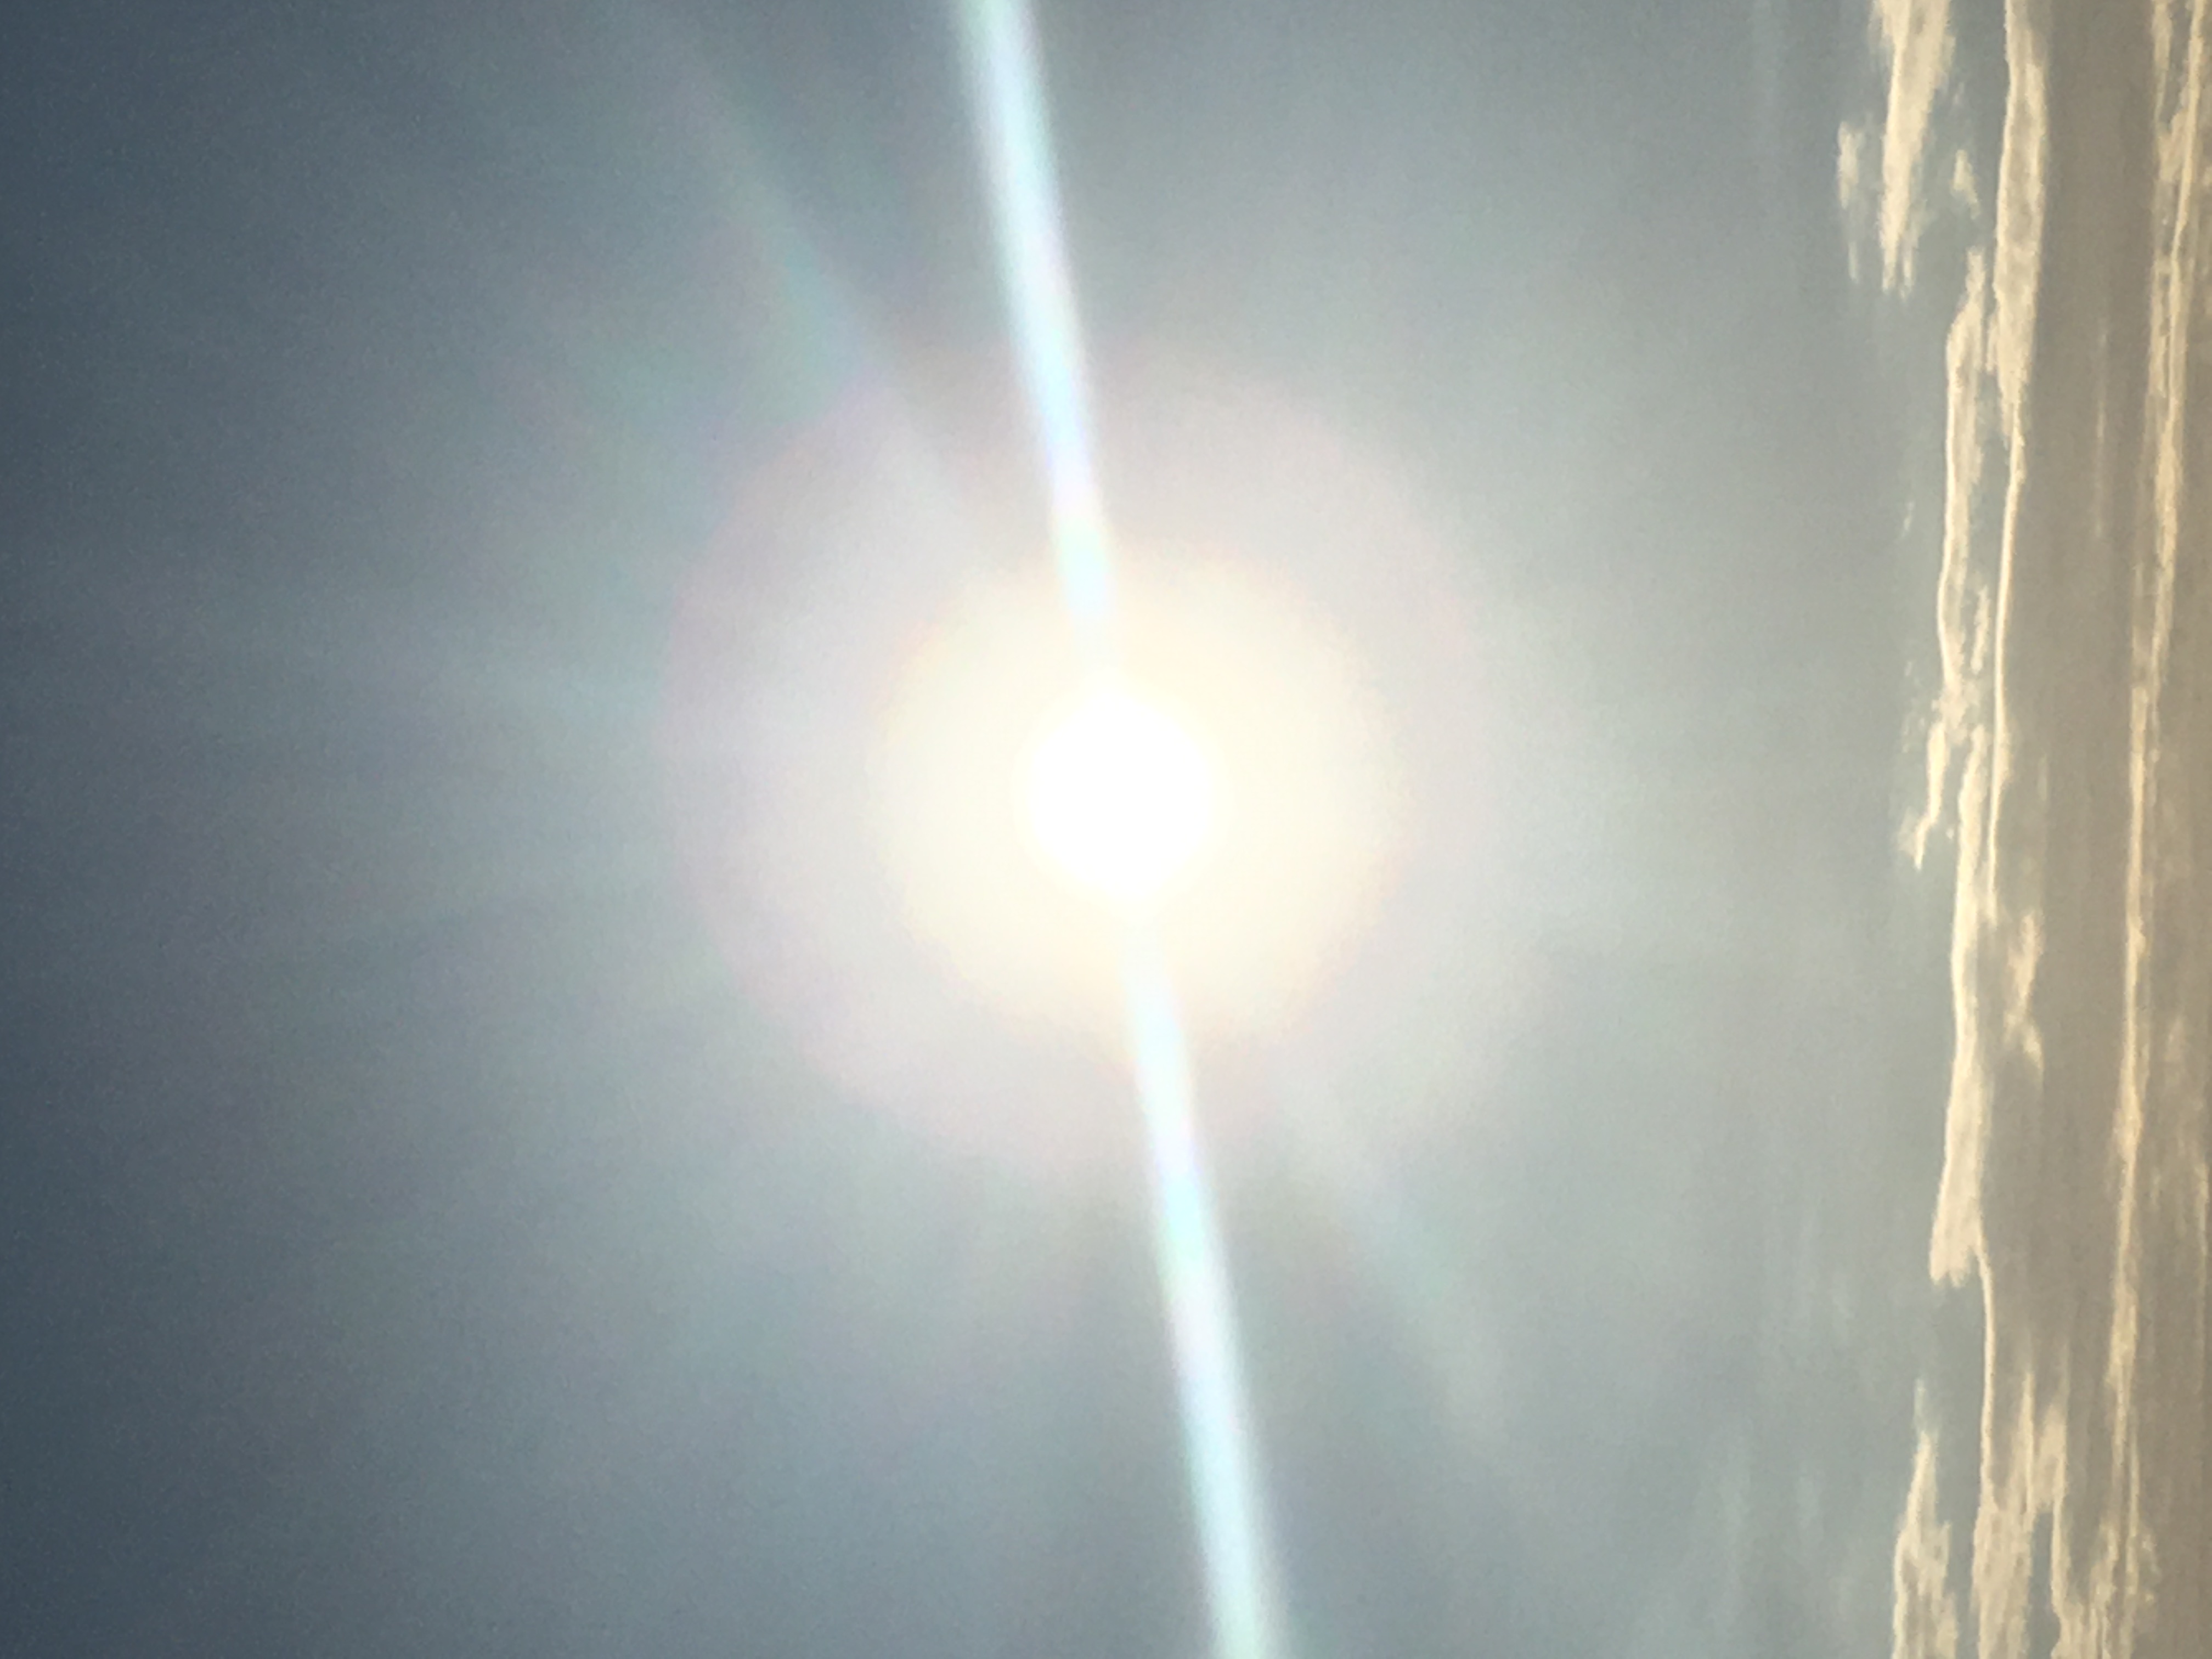 Photograph of the sun taken a Muriwai Beach